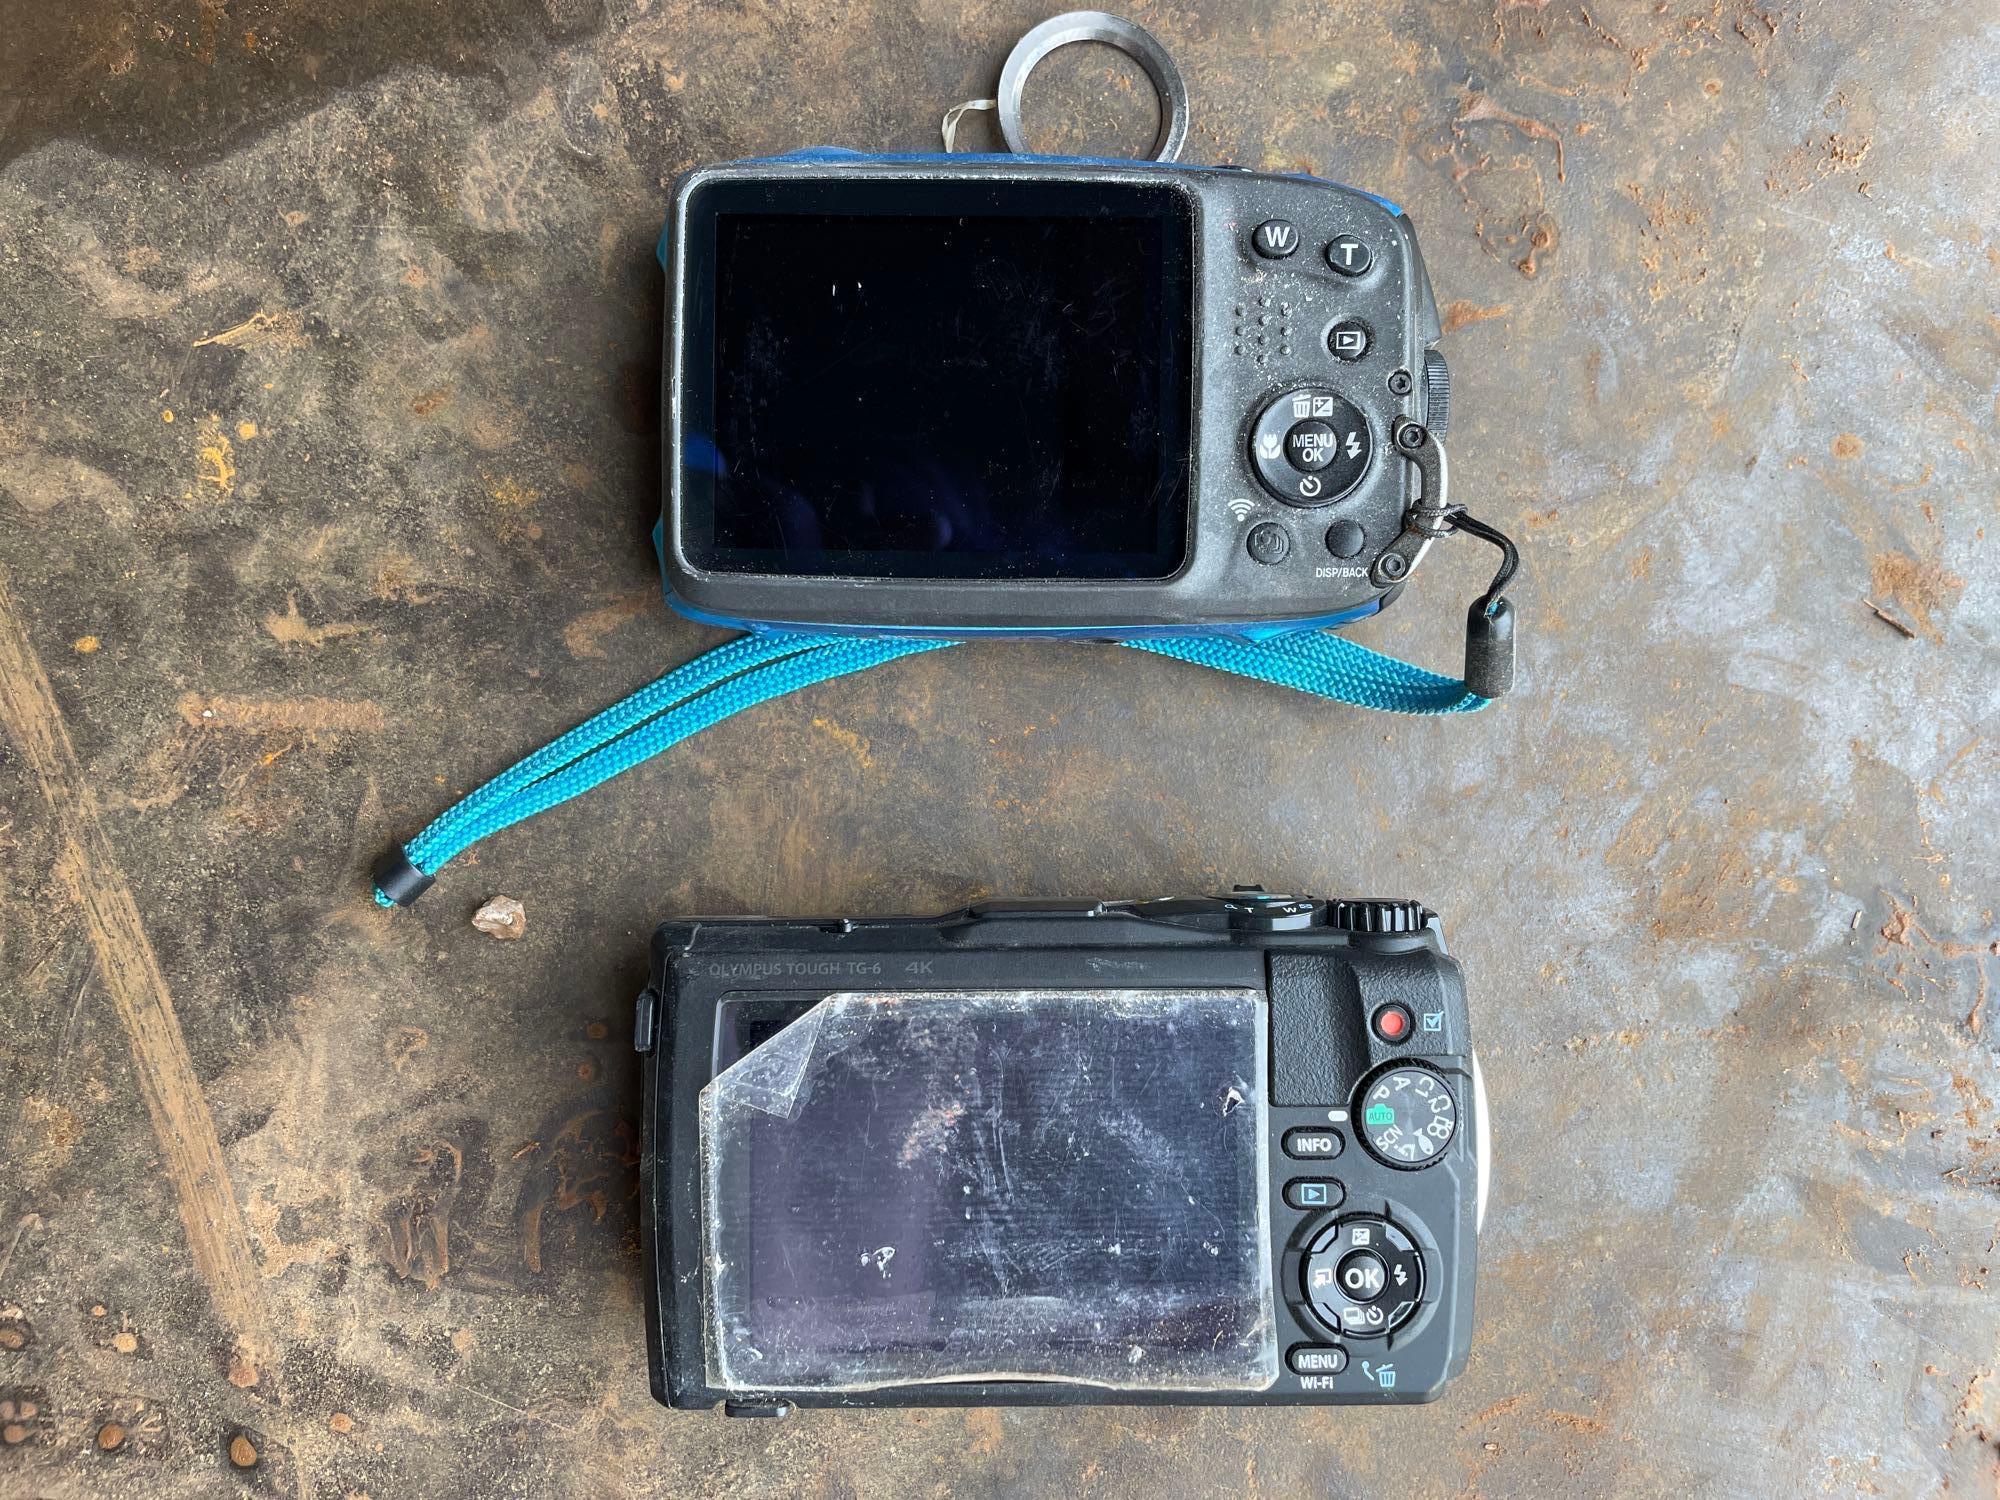 2 cameras